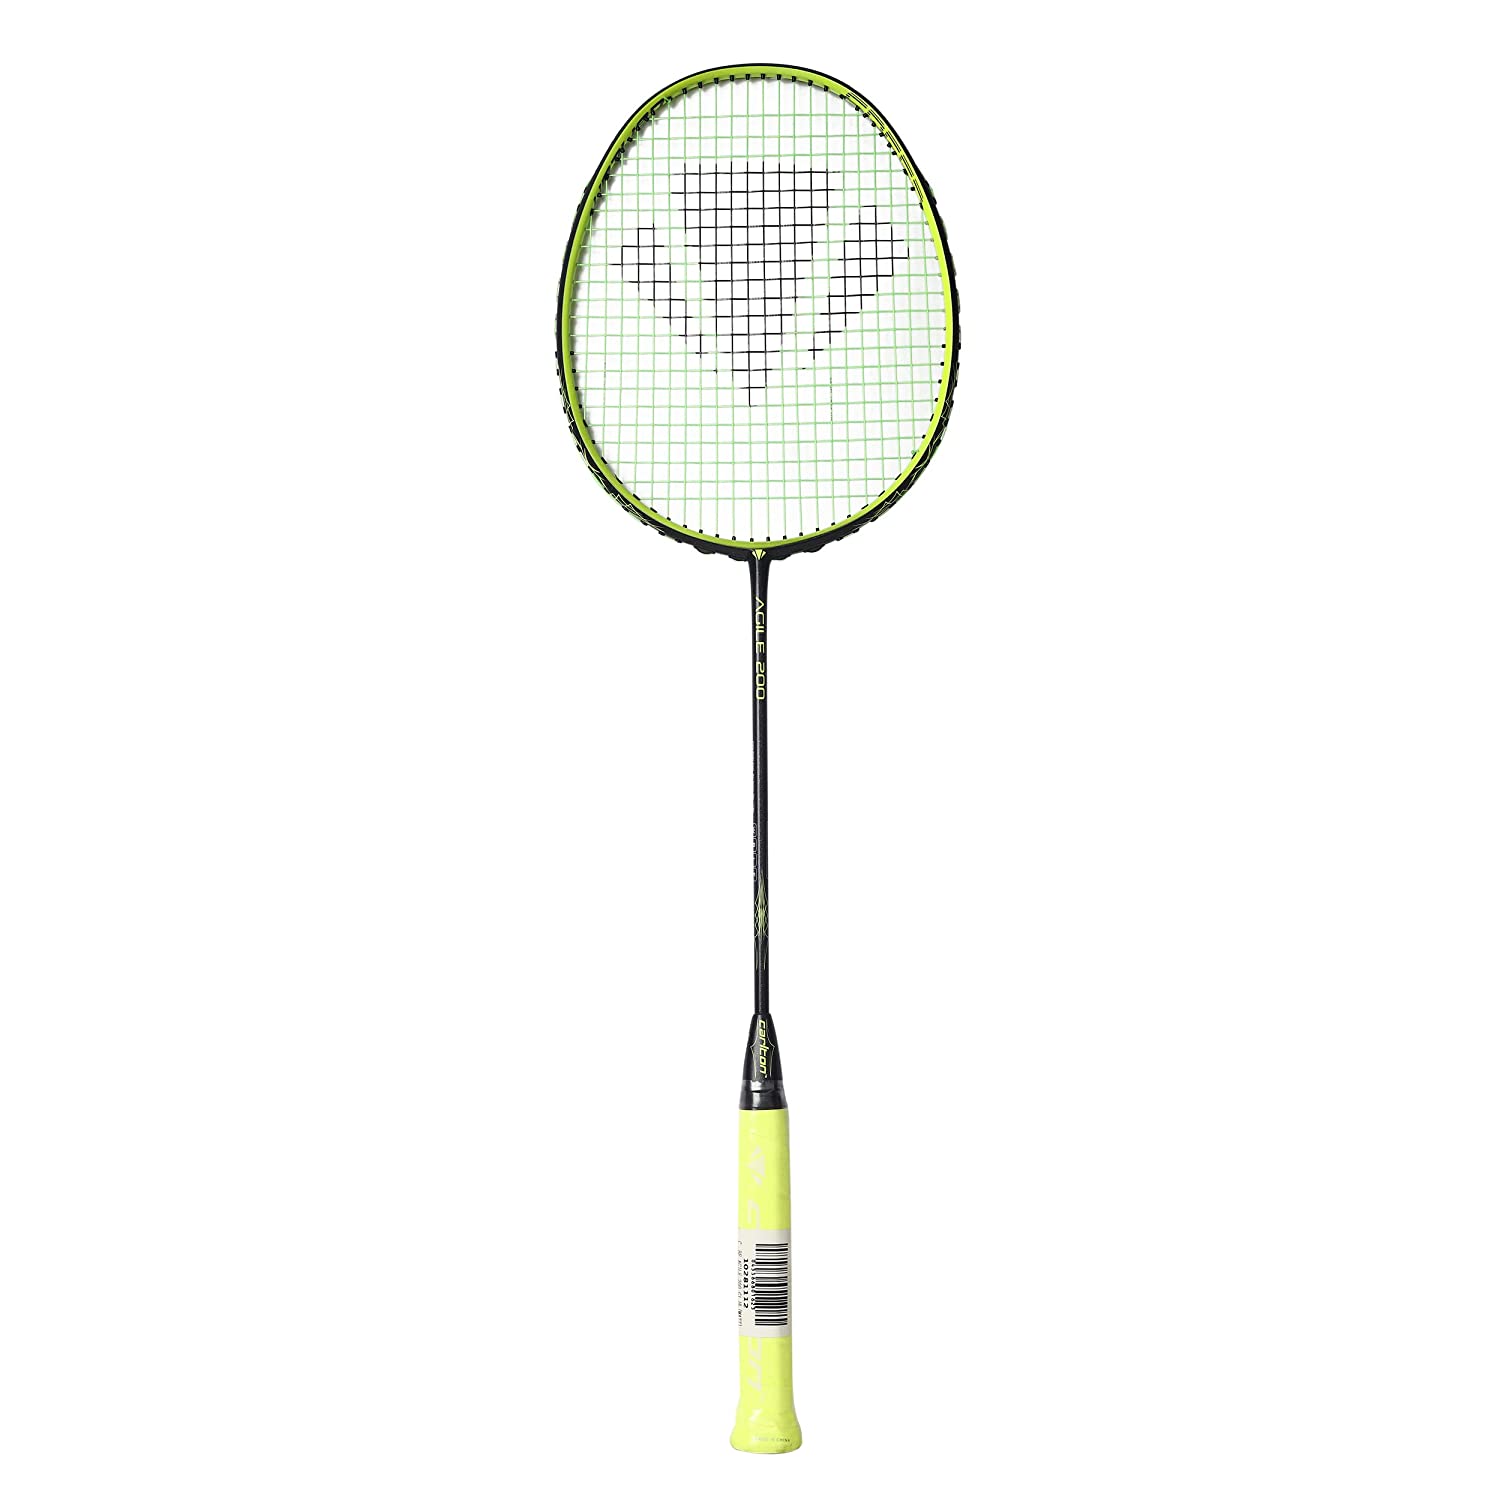 Carlon Agile 200 Strung Badminton Racquet, Black/Lime - Best Price online Prokicksports.com